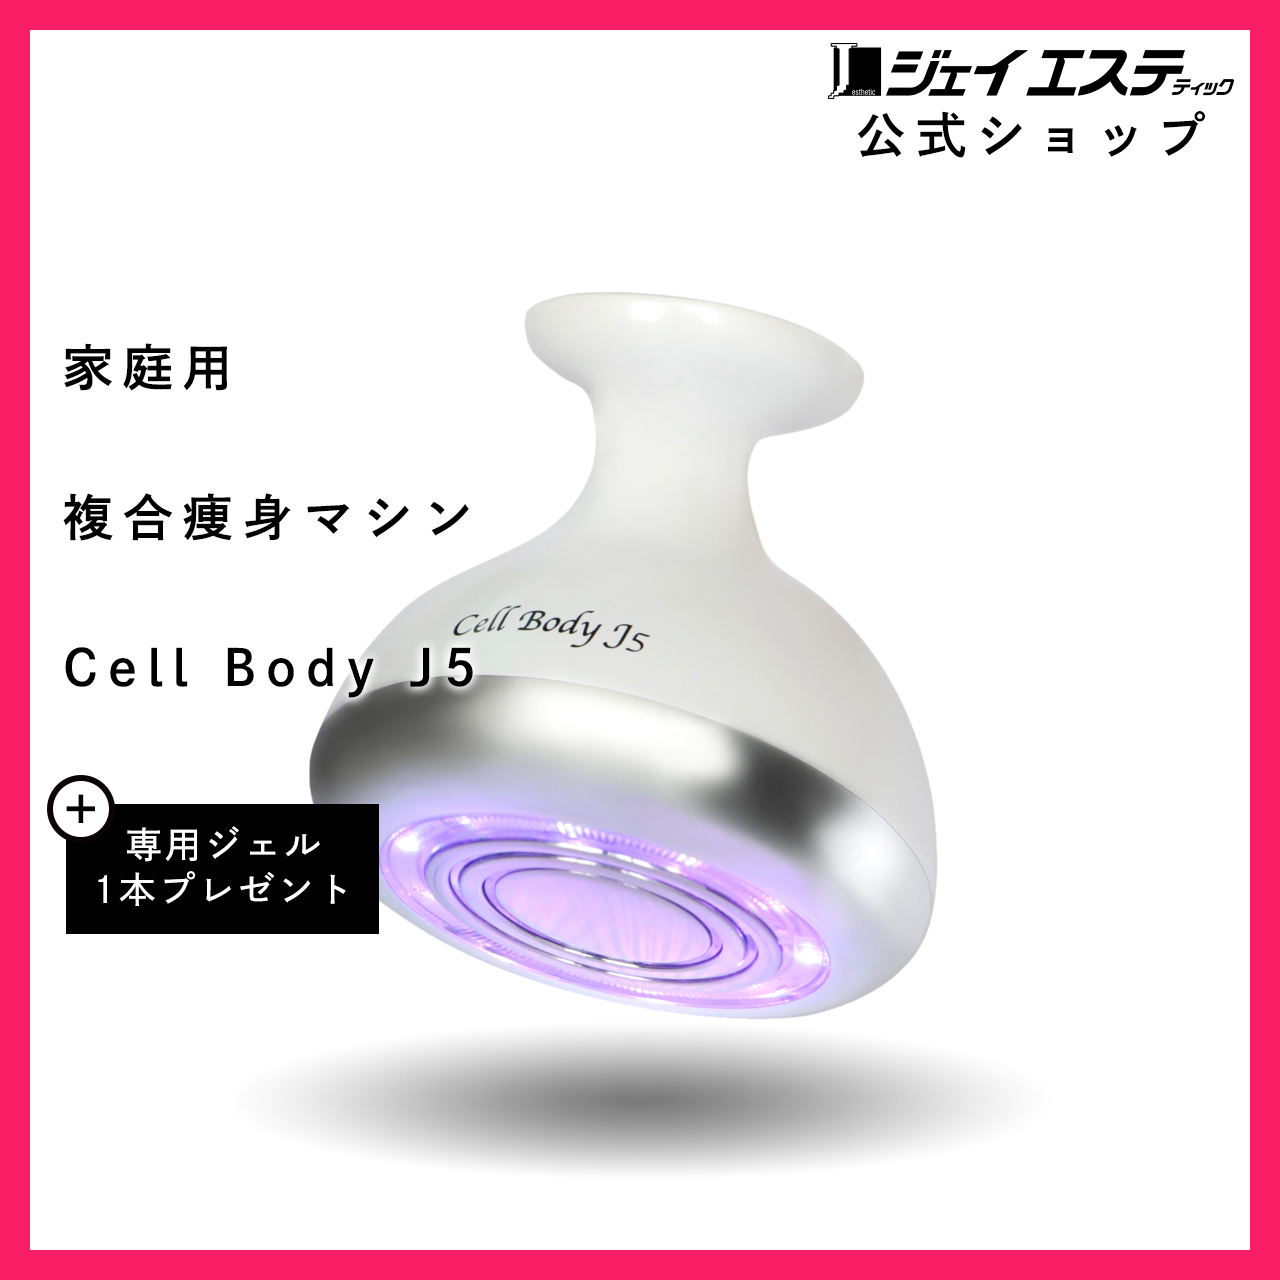 ジェイエステ Cell Body J5(セルボディ ジェイ5) humans.com.co